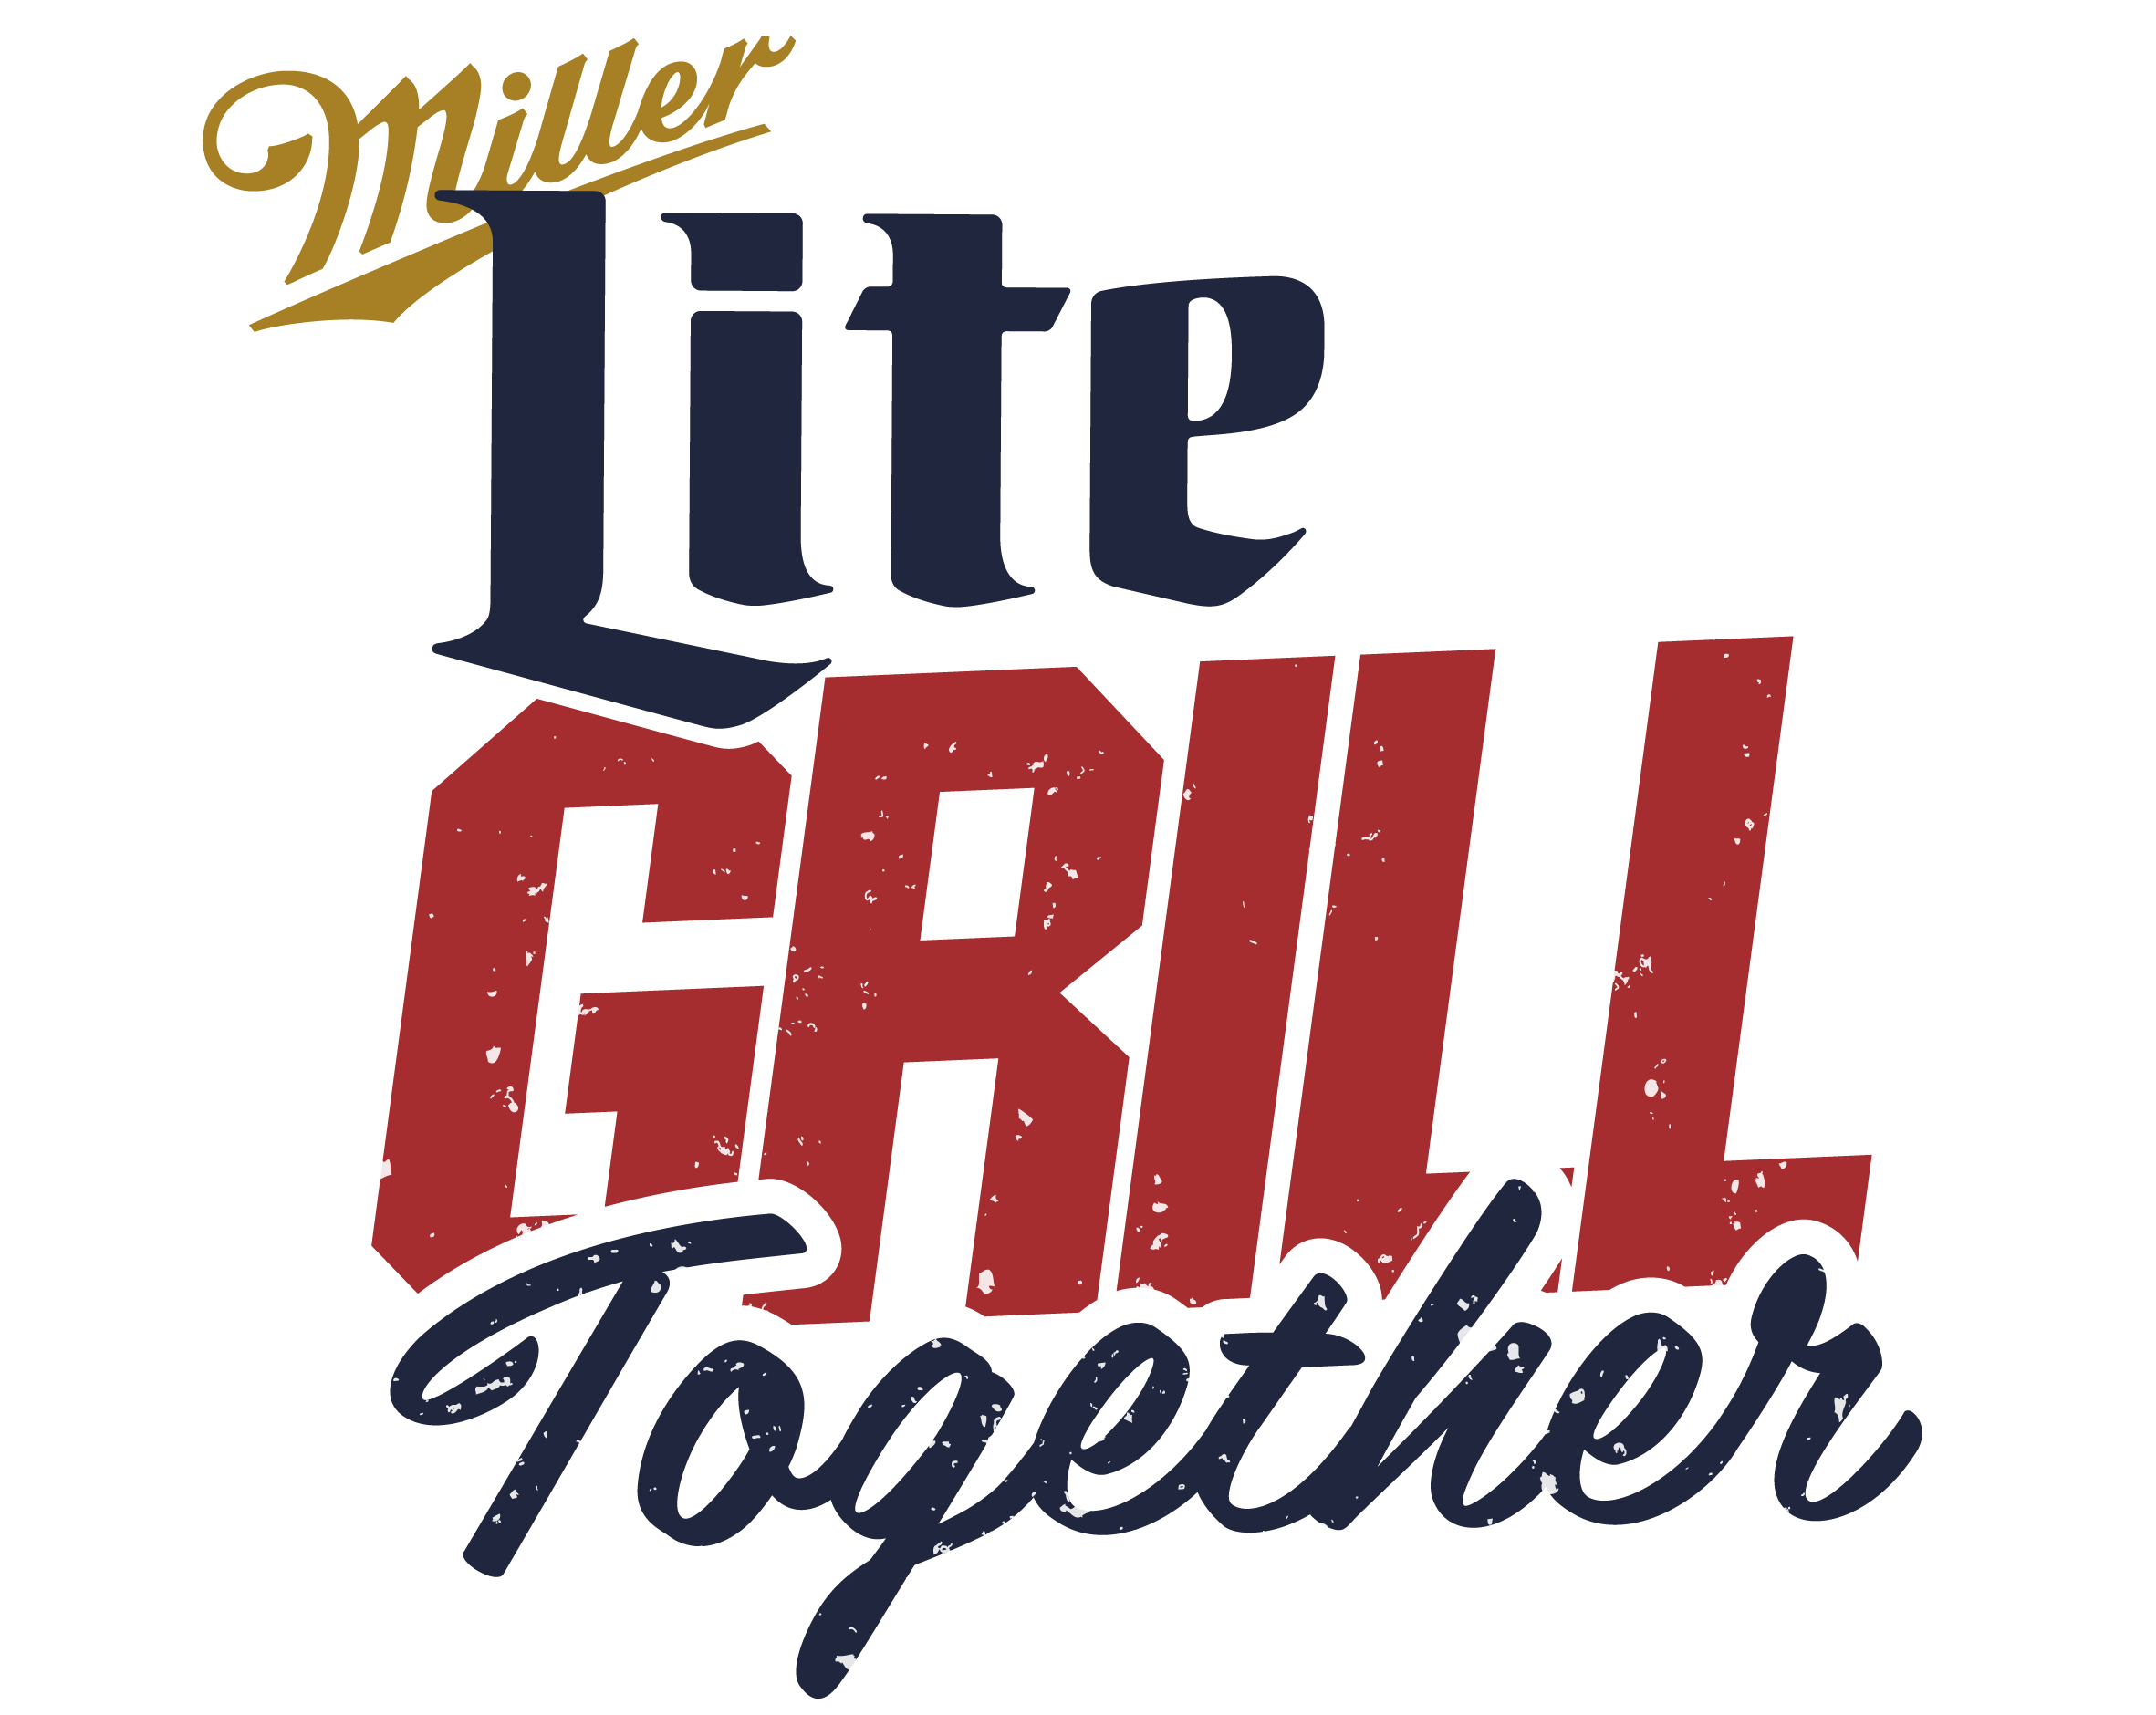 Logo de Miller Grill, evento en el que Hielos del Poniente ha sido distribuidor